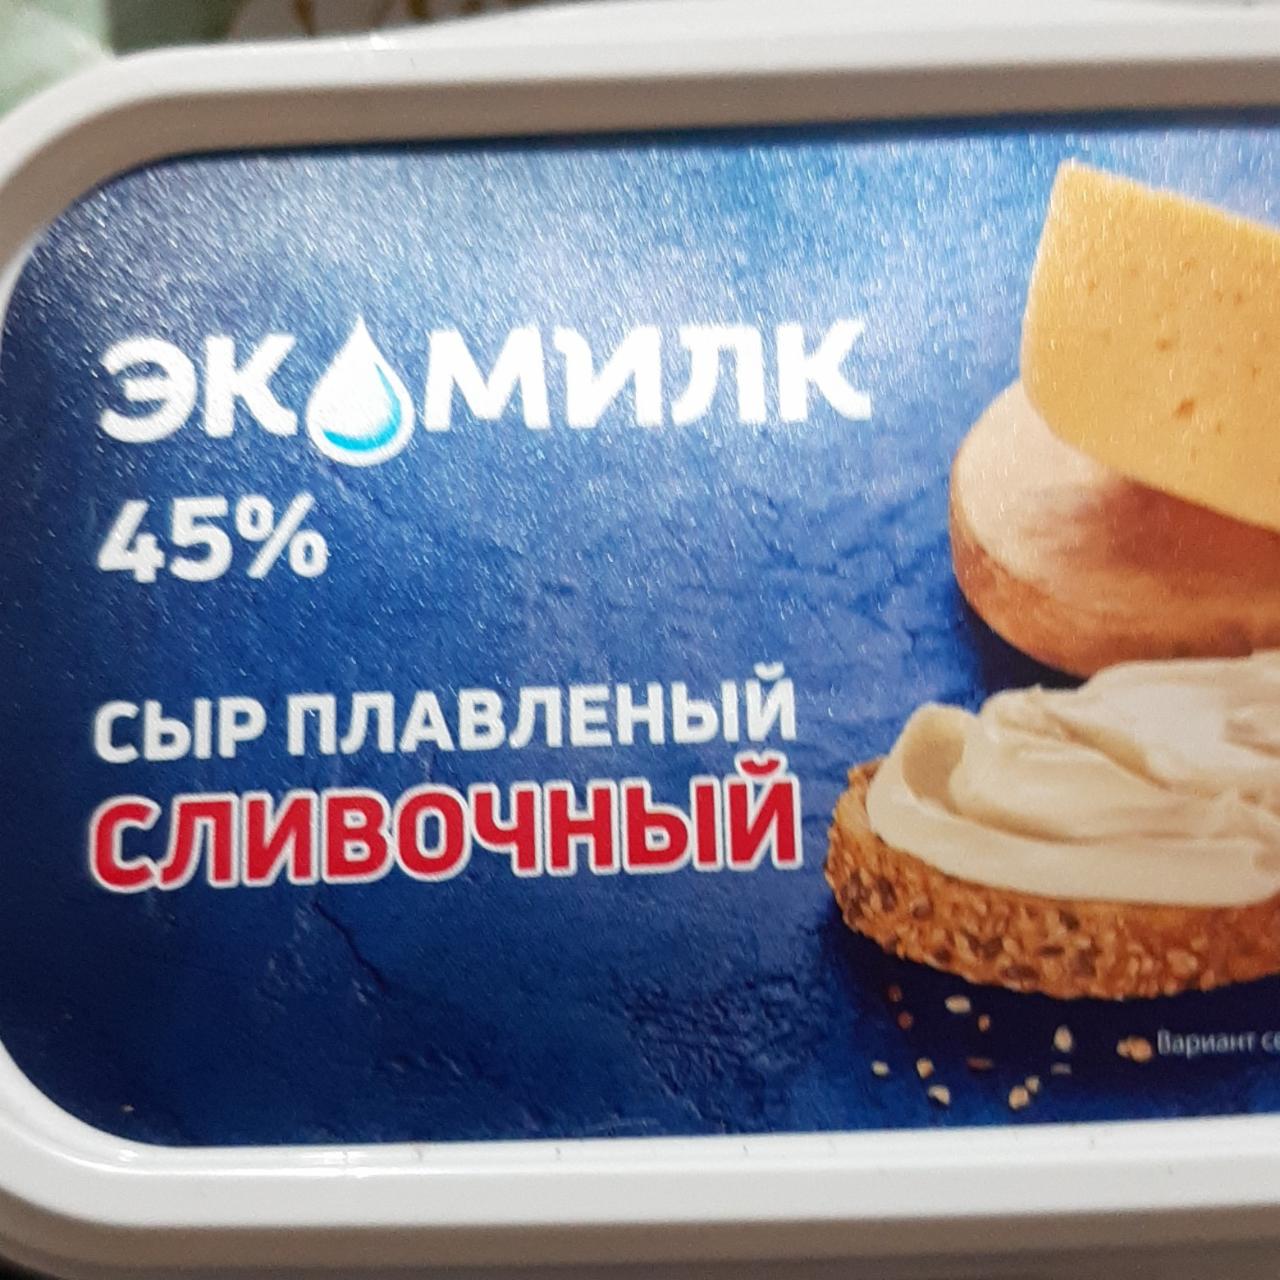 Фото - Сыр плавленый 45% сливочный Экомилк